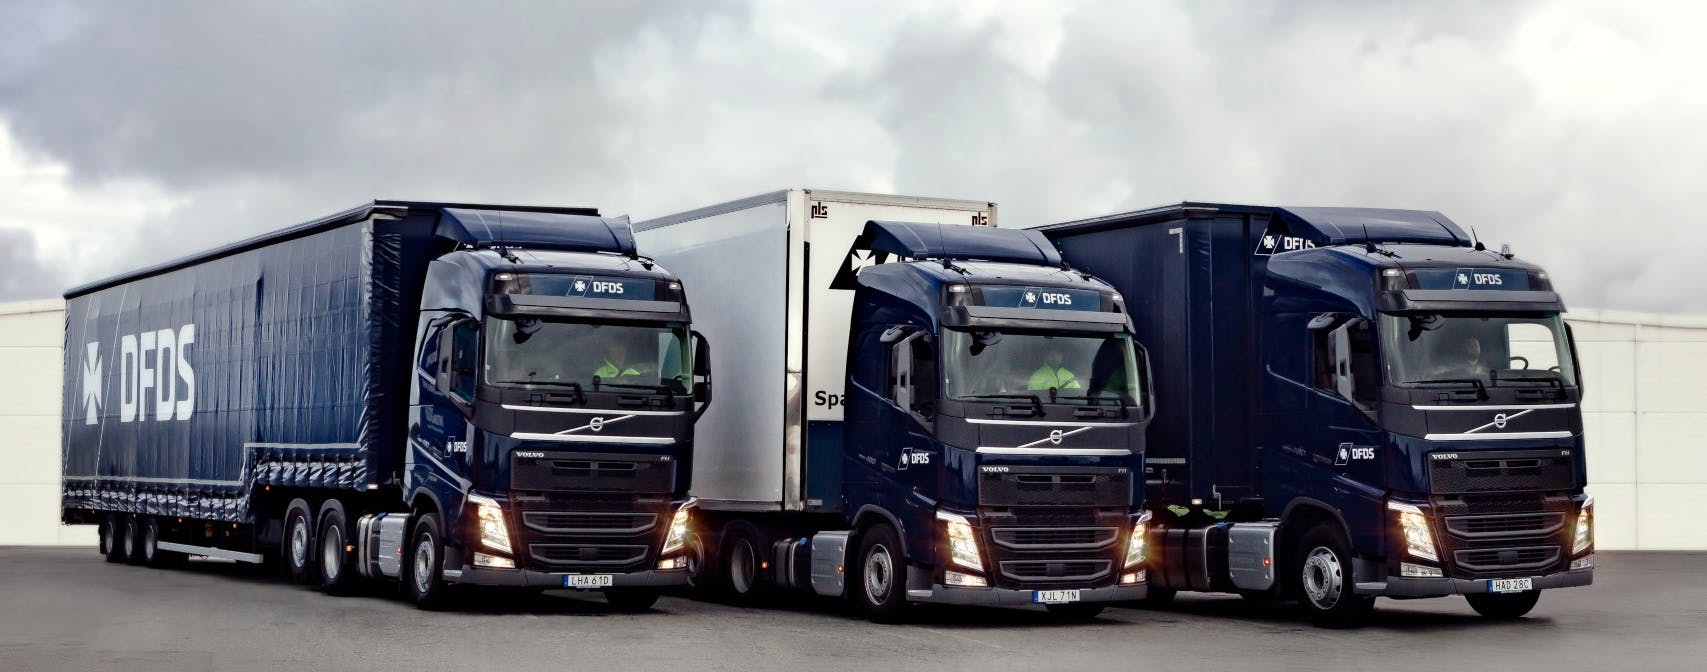 Volvo Trucks DFDS - hero image crop